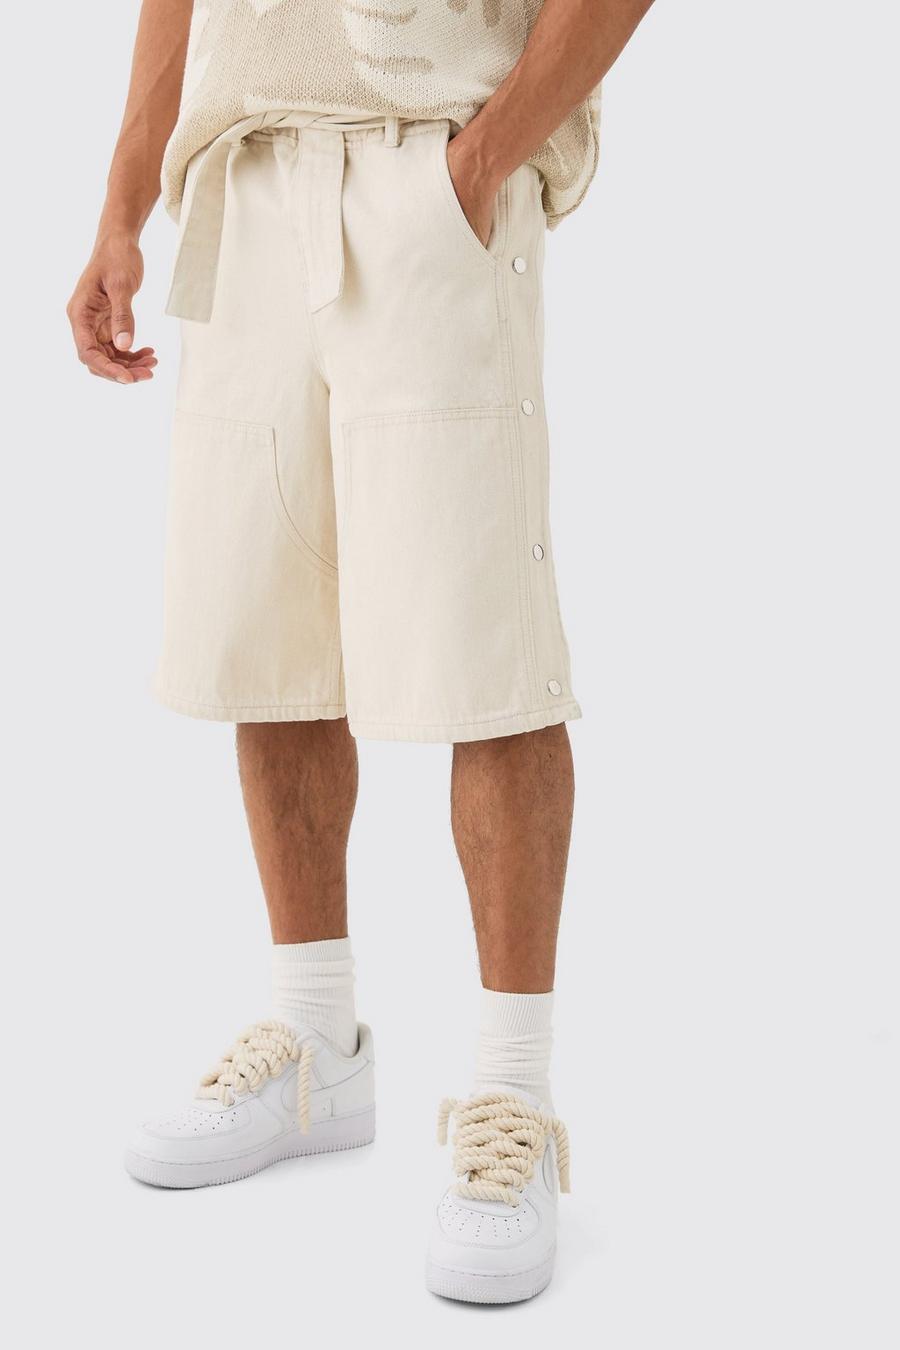 Pantalón corto vaquero estilo carpintero holgado con cintura elástica y botones de presión en color crudo, Ecru image number 1